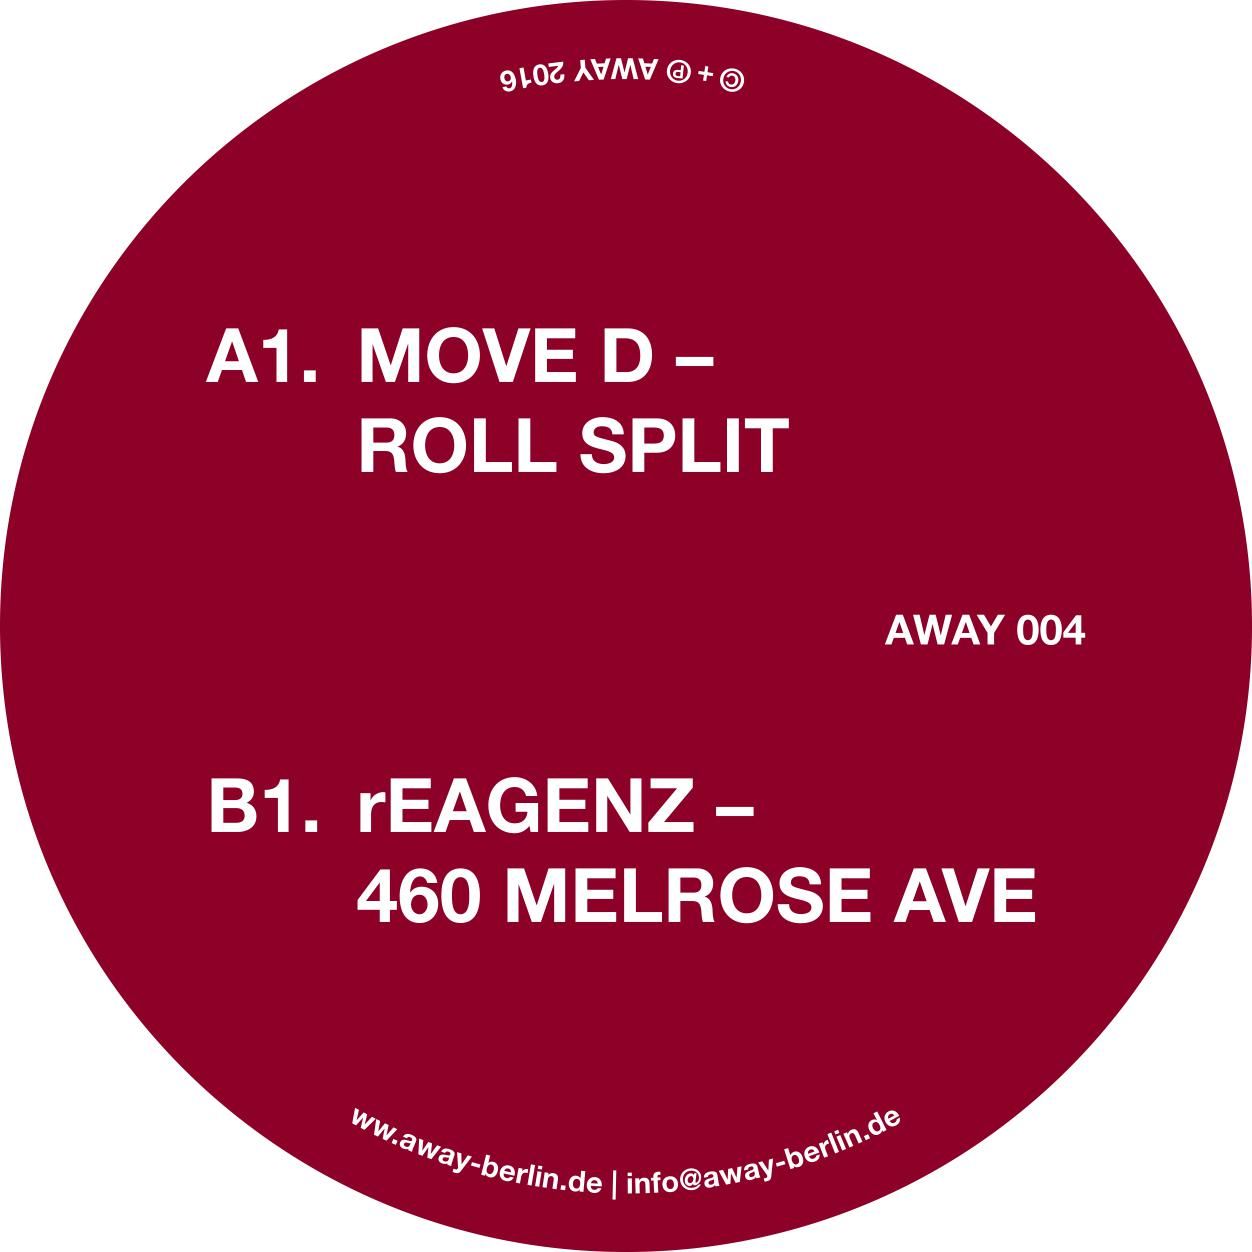 බාගත AWAY - 004 B - rEAGENZ - 460 Melrose Ave